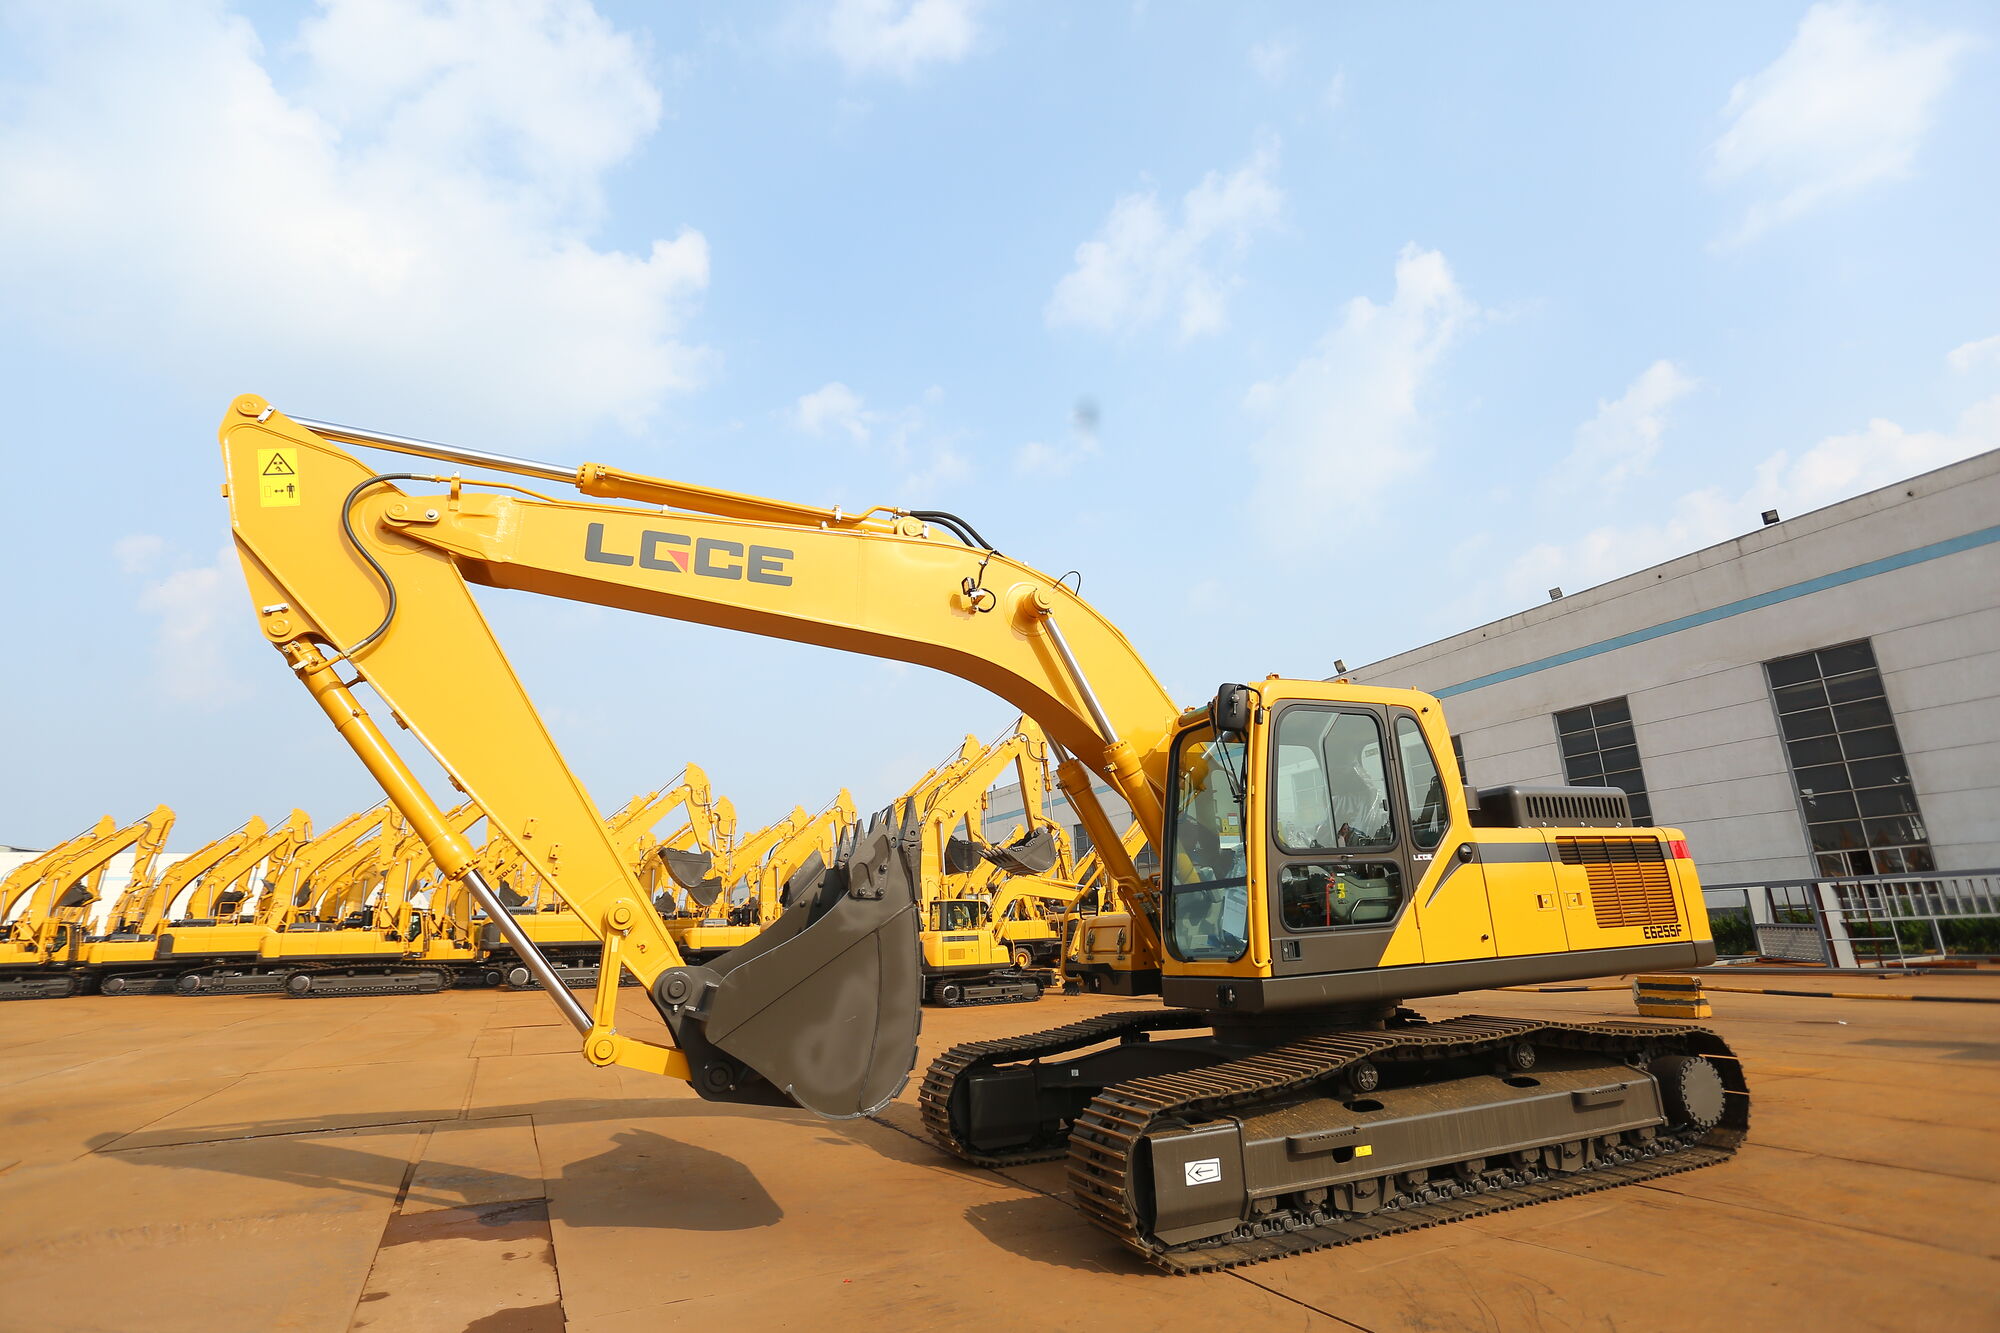 Экскаватор гусеничный LGCE (SDLG) E6255F Linyi Lingong Heavy Industry Machinery Co., Ltd